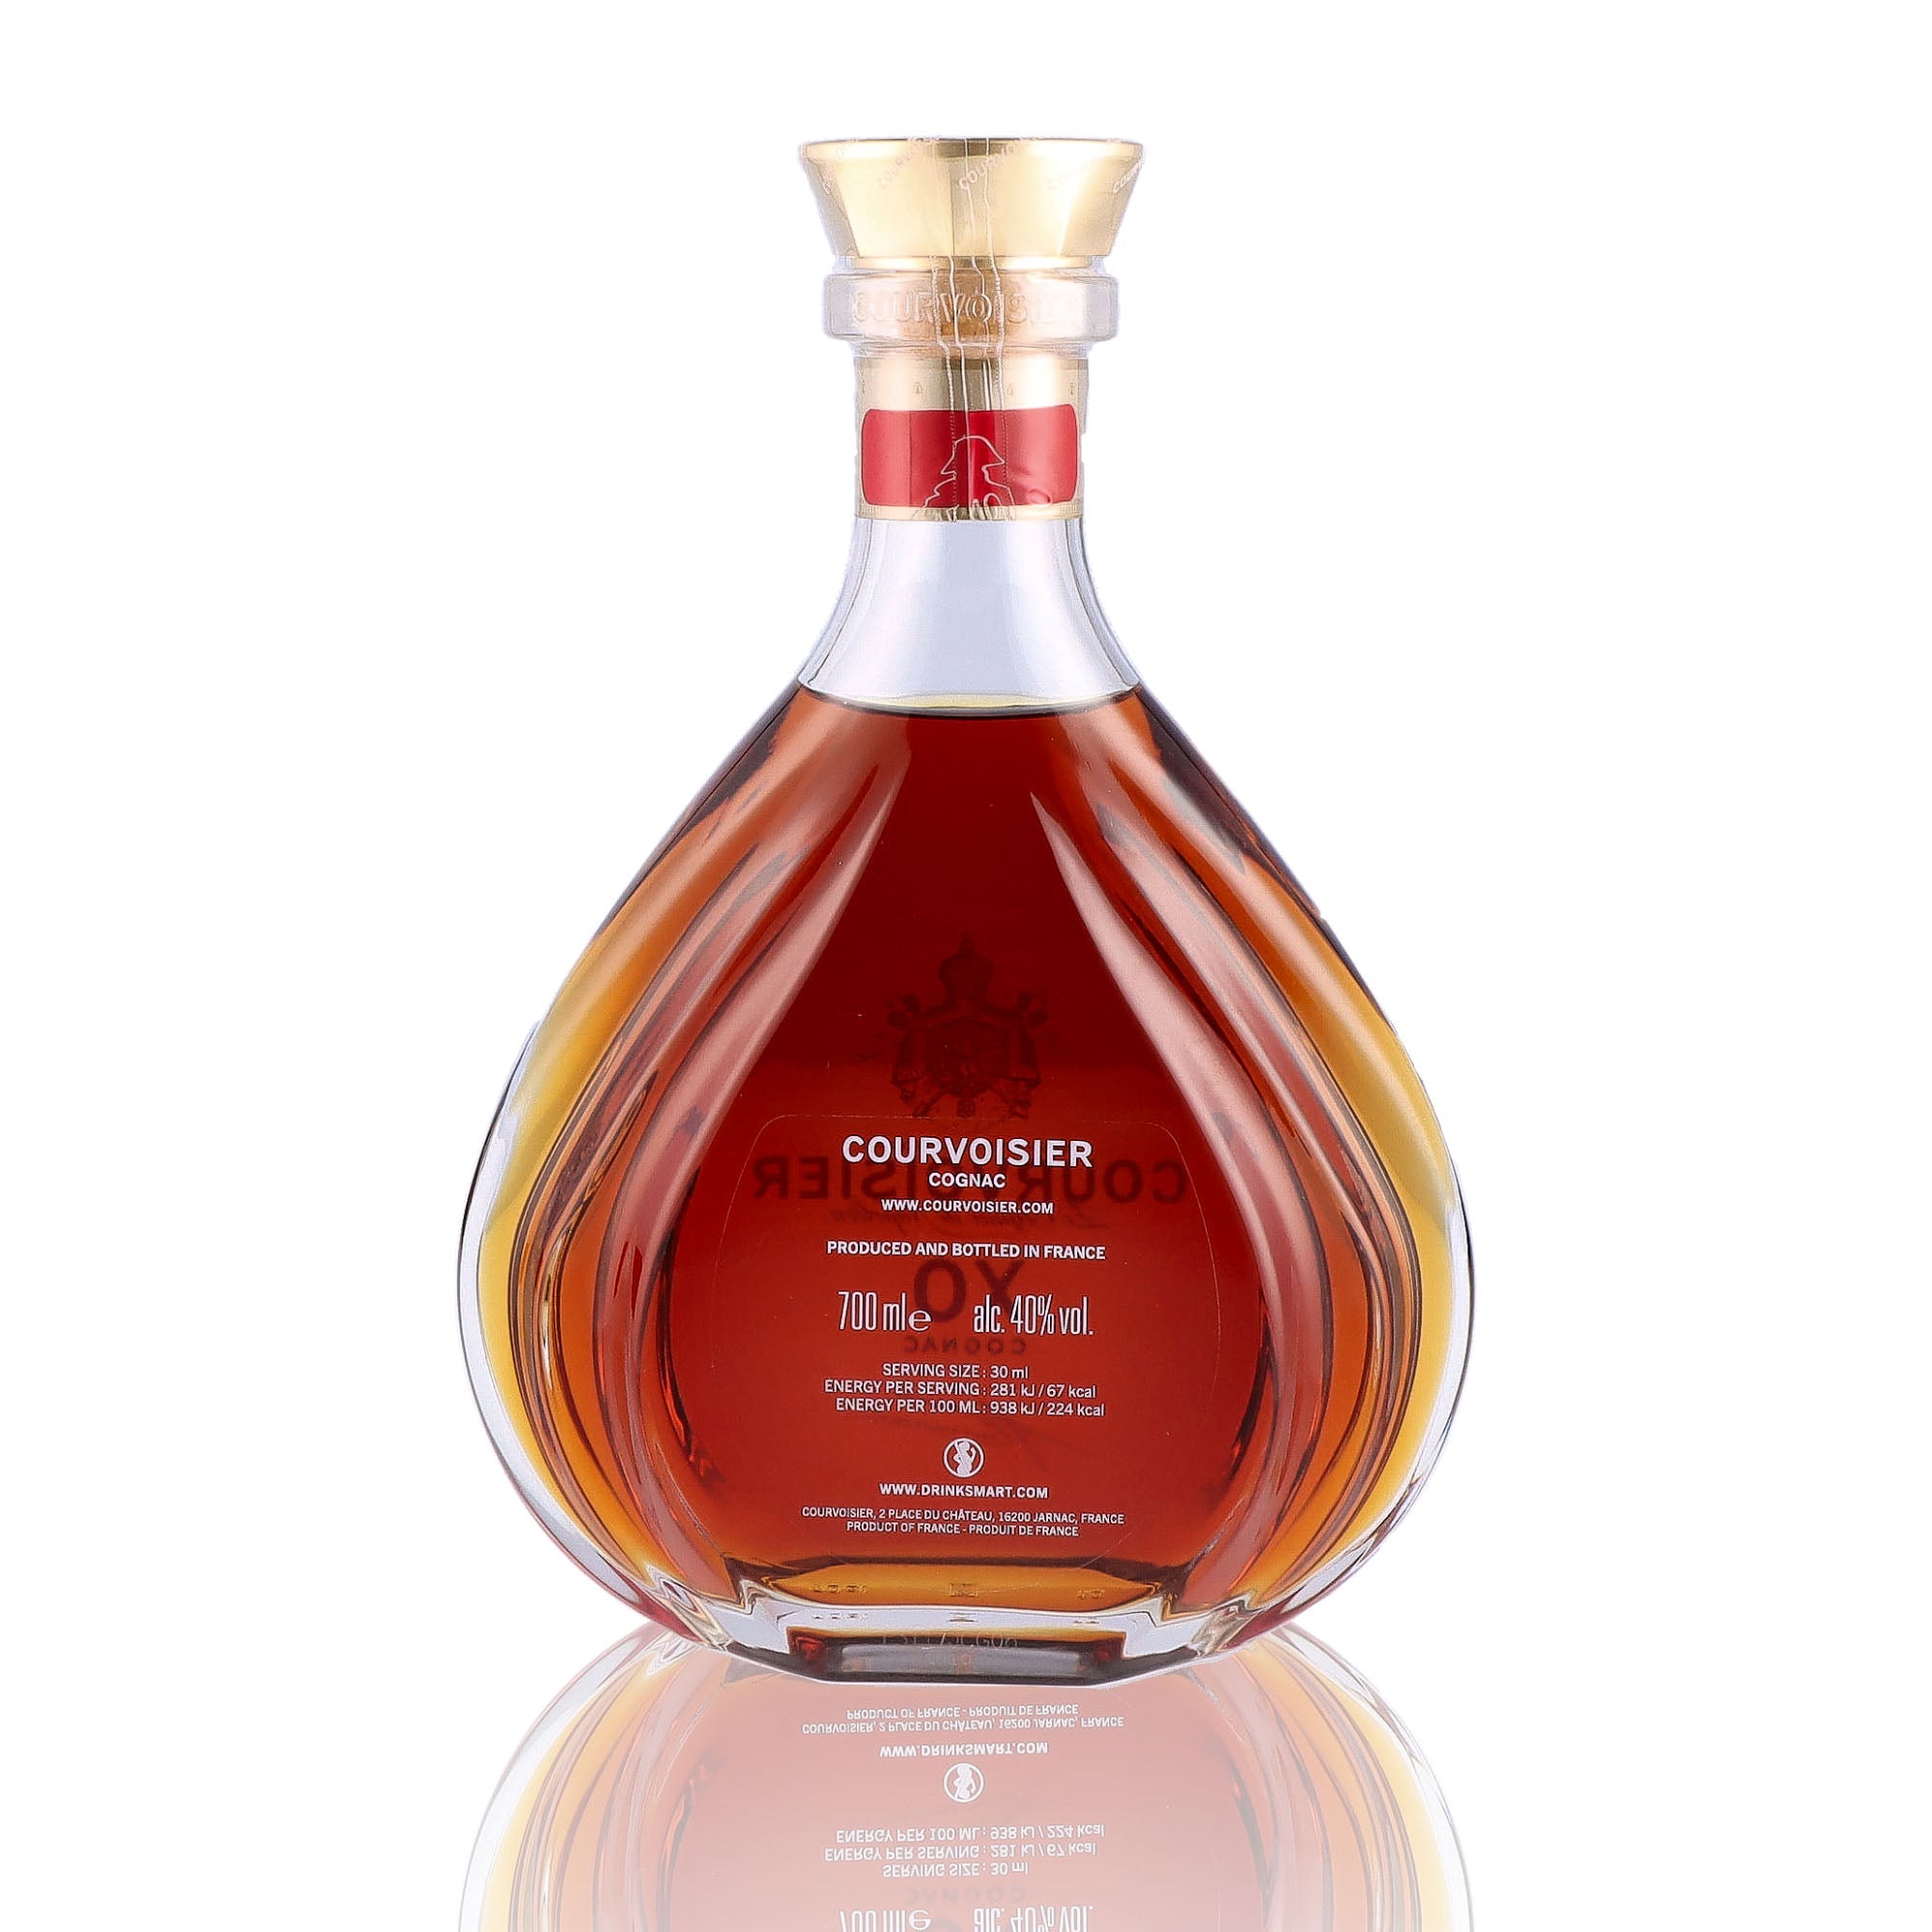 Une bouteille de Cognac, de la marque Courvoisier, nommée XO.